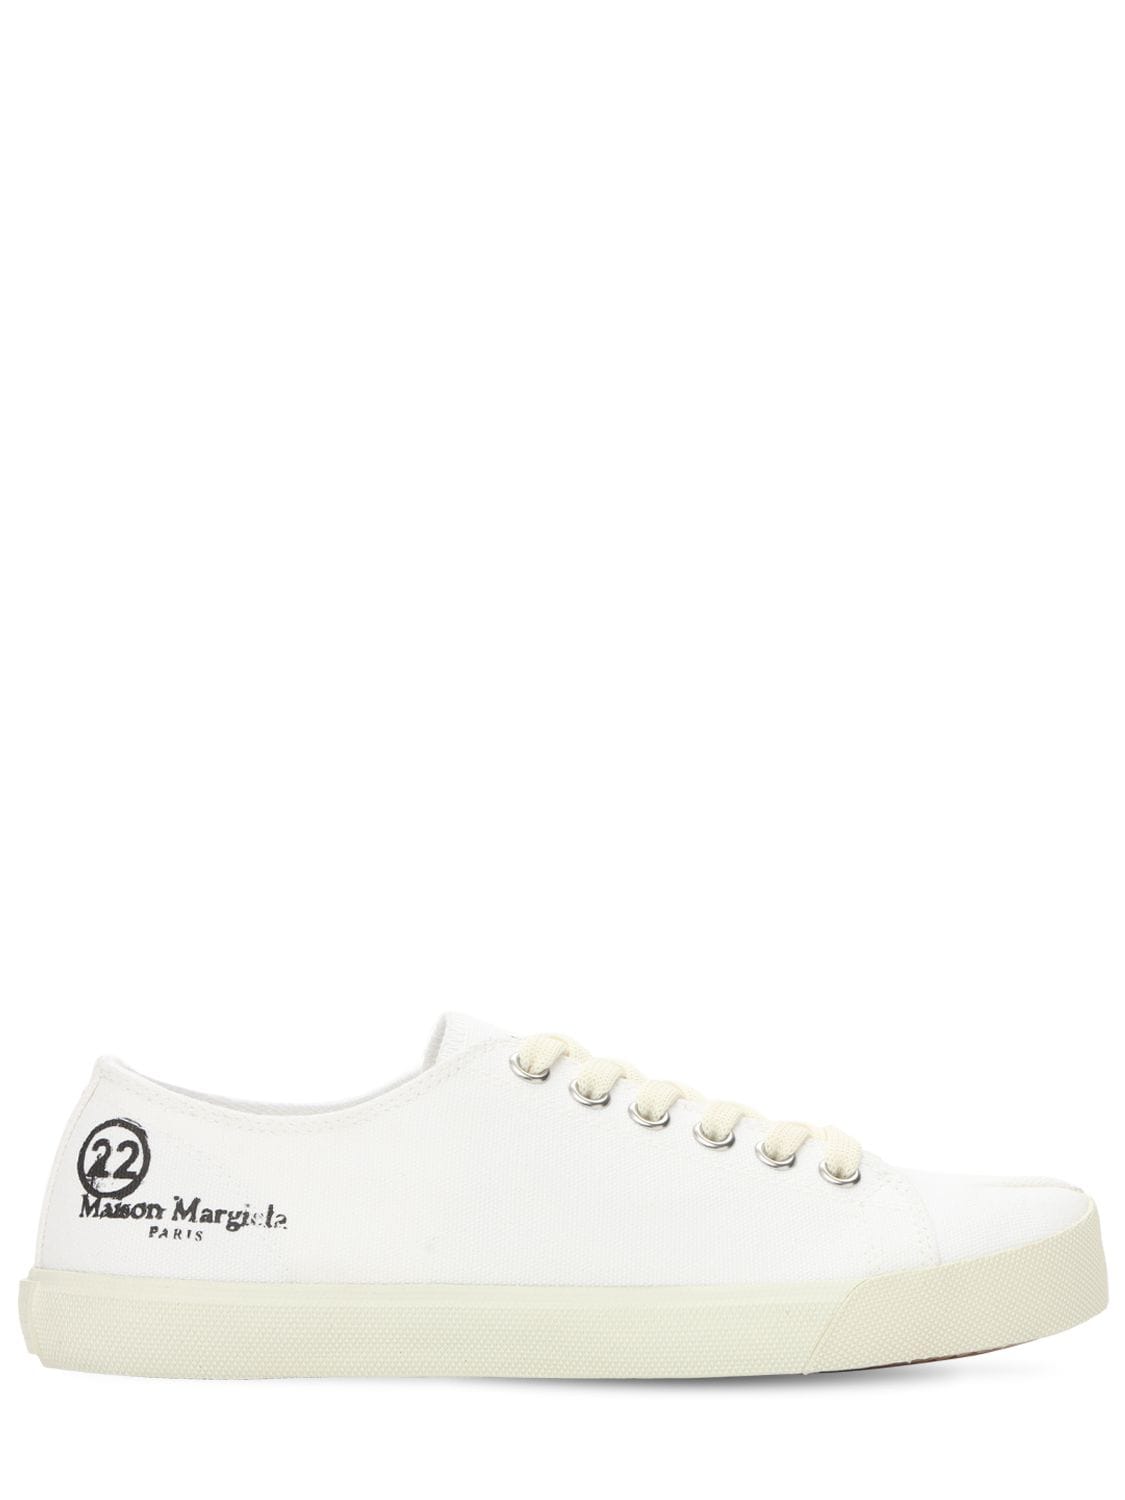 Maison Margiela 20毫米“vandal”帆布运动鞋 In White